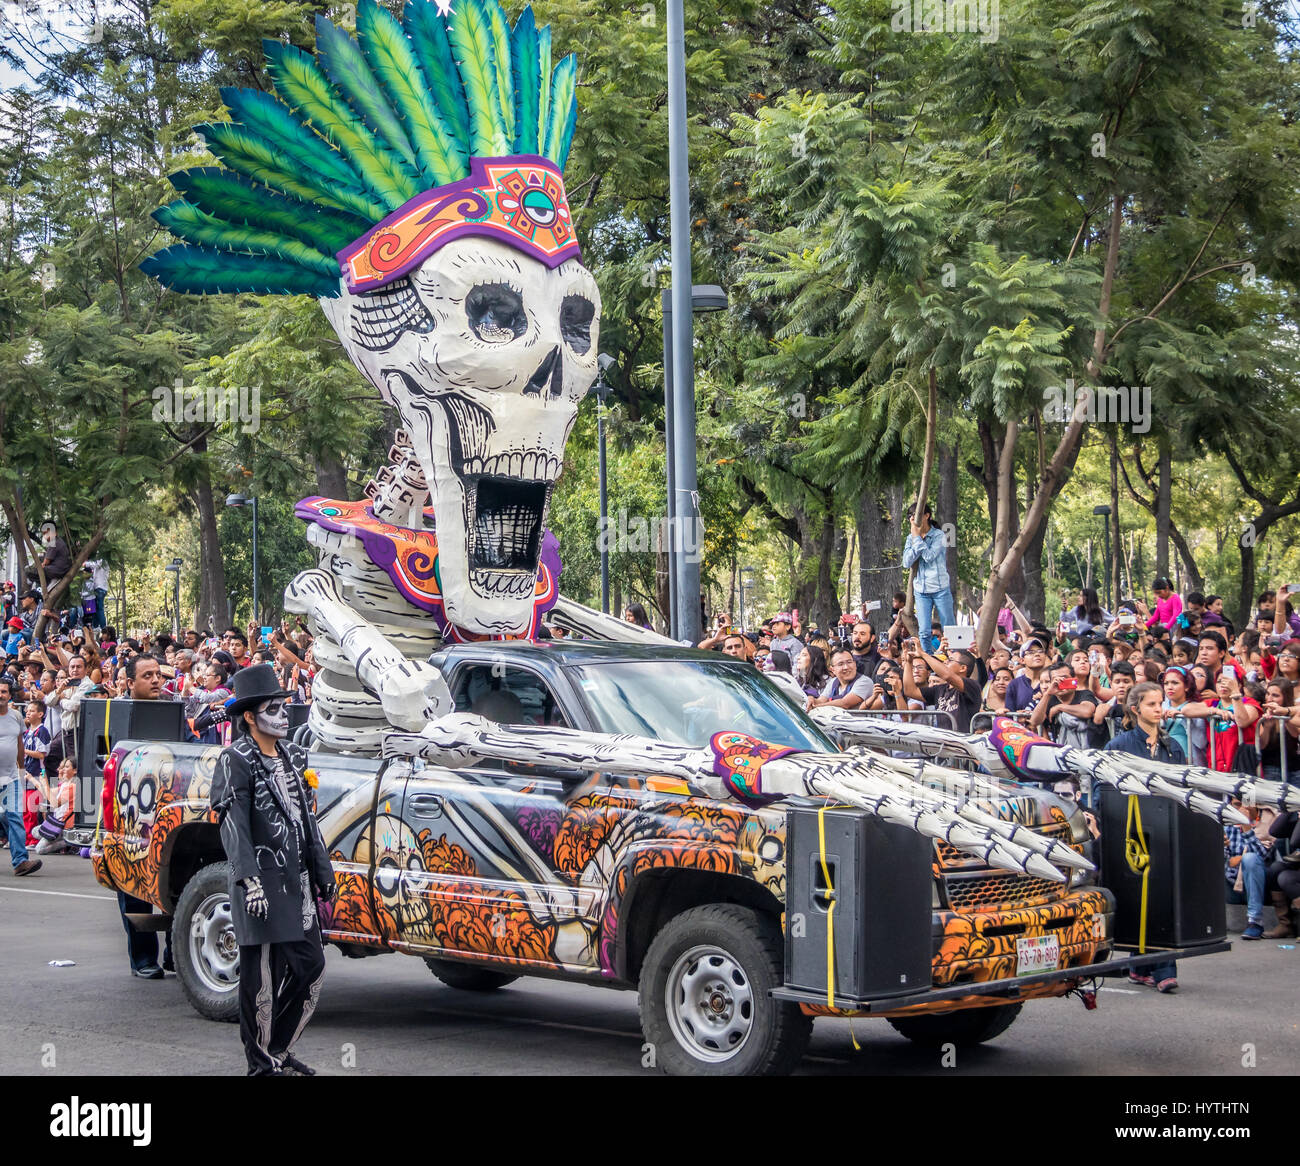 Day of the dead (Dia de los muertos) parade in Mexico city - Mexico Stock Photo